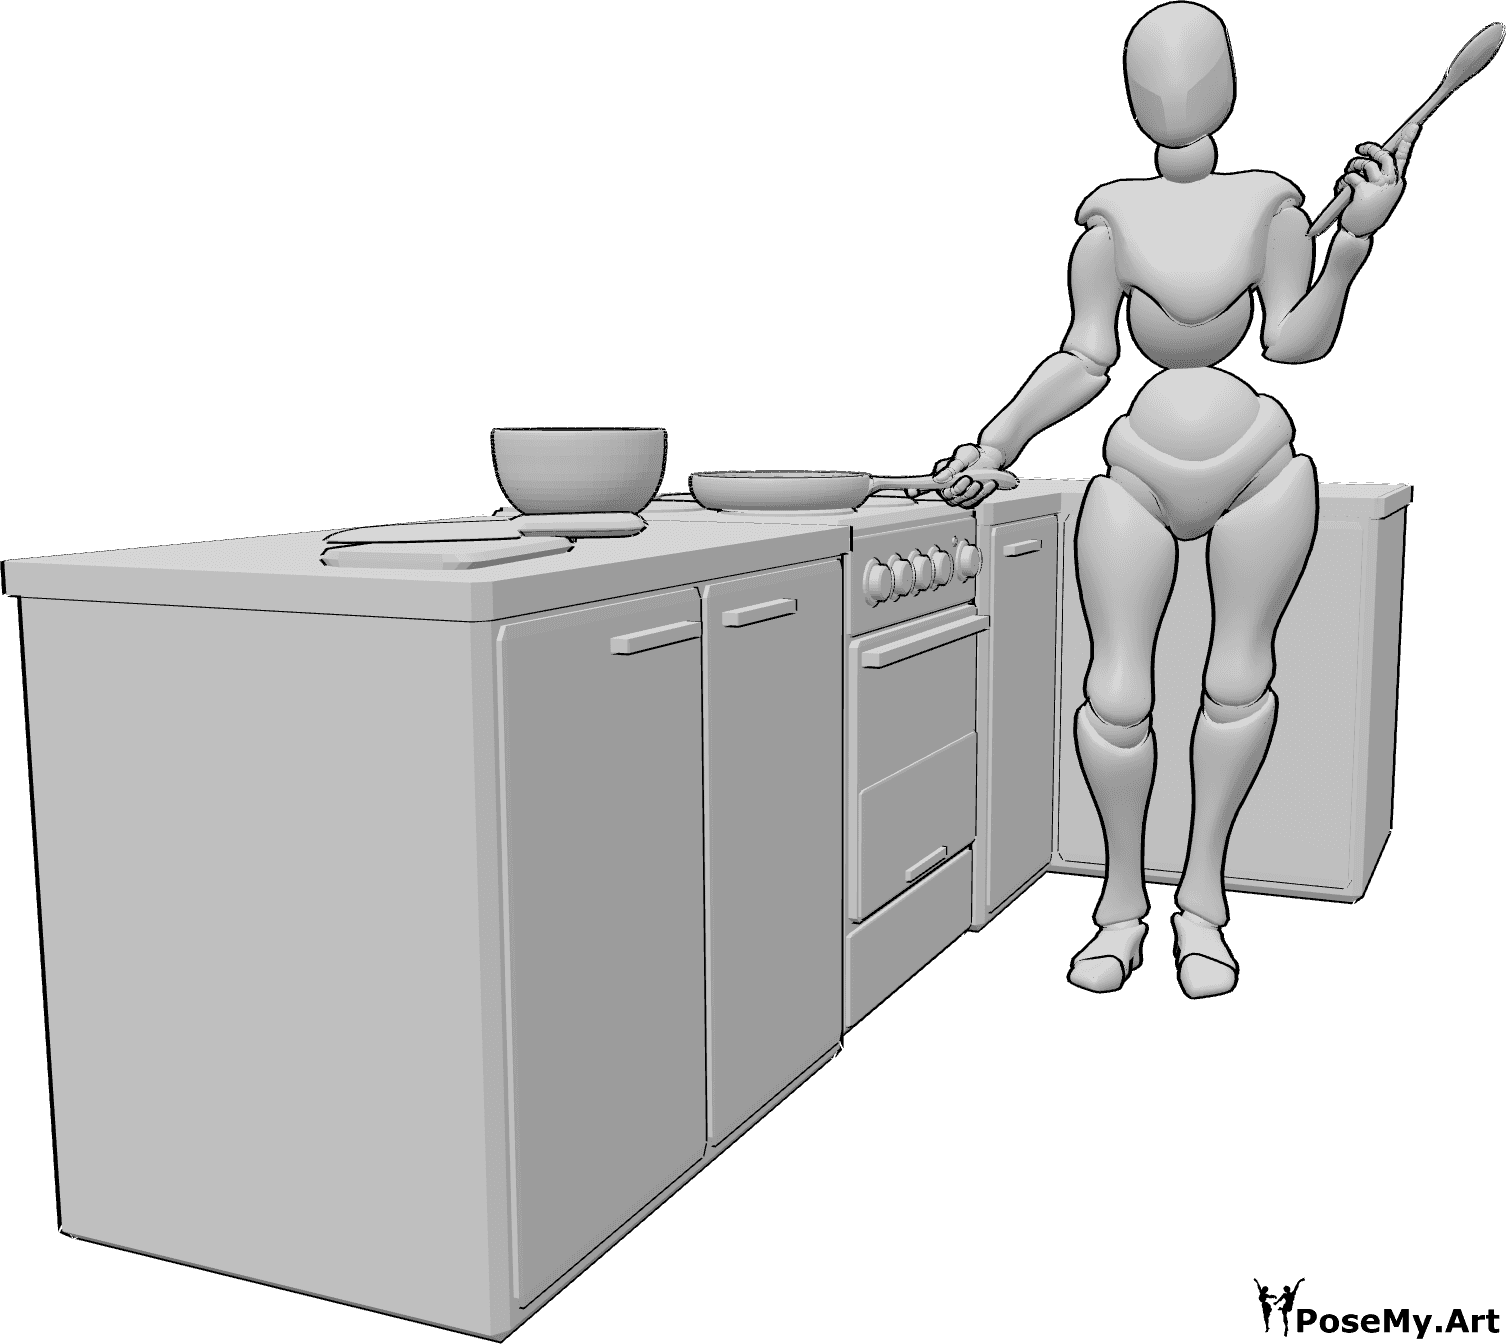 Referência de poses- Pose de cozinheiro com colher - Mulher de pé na cozinha, segurando uma panela na mão direita e uma colher de pau na mão esquerda